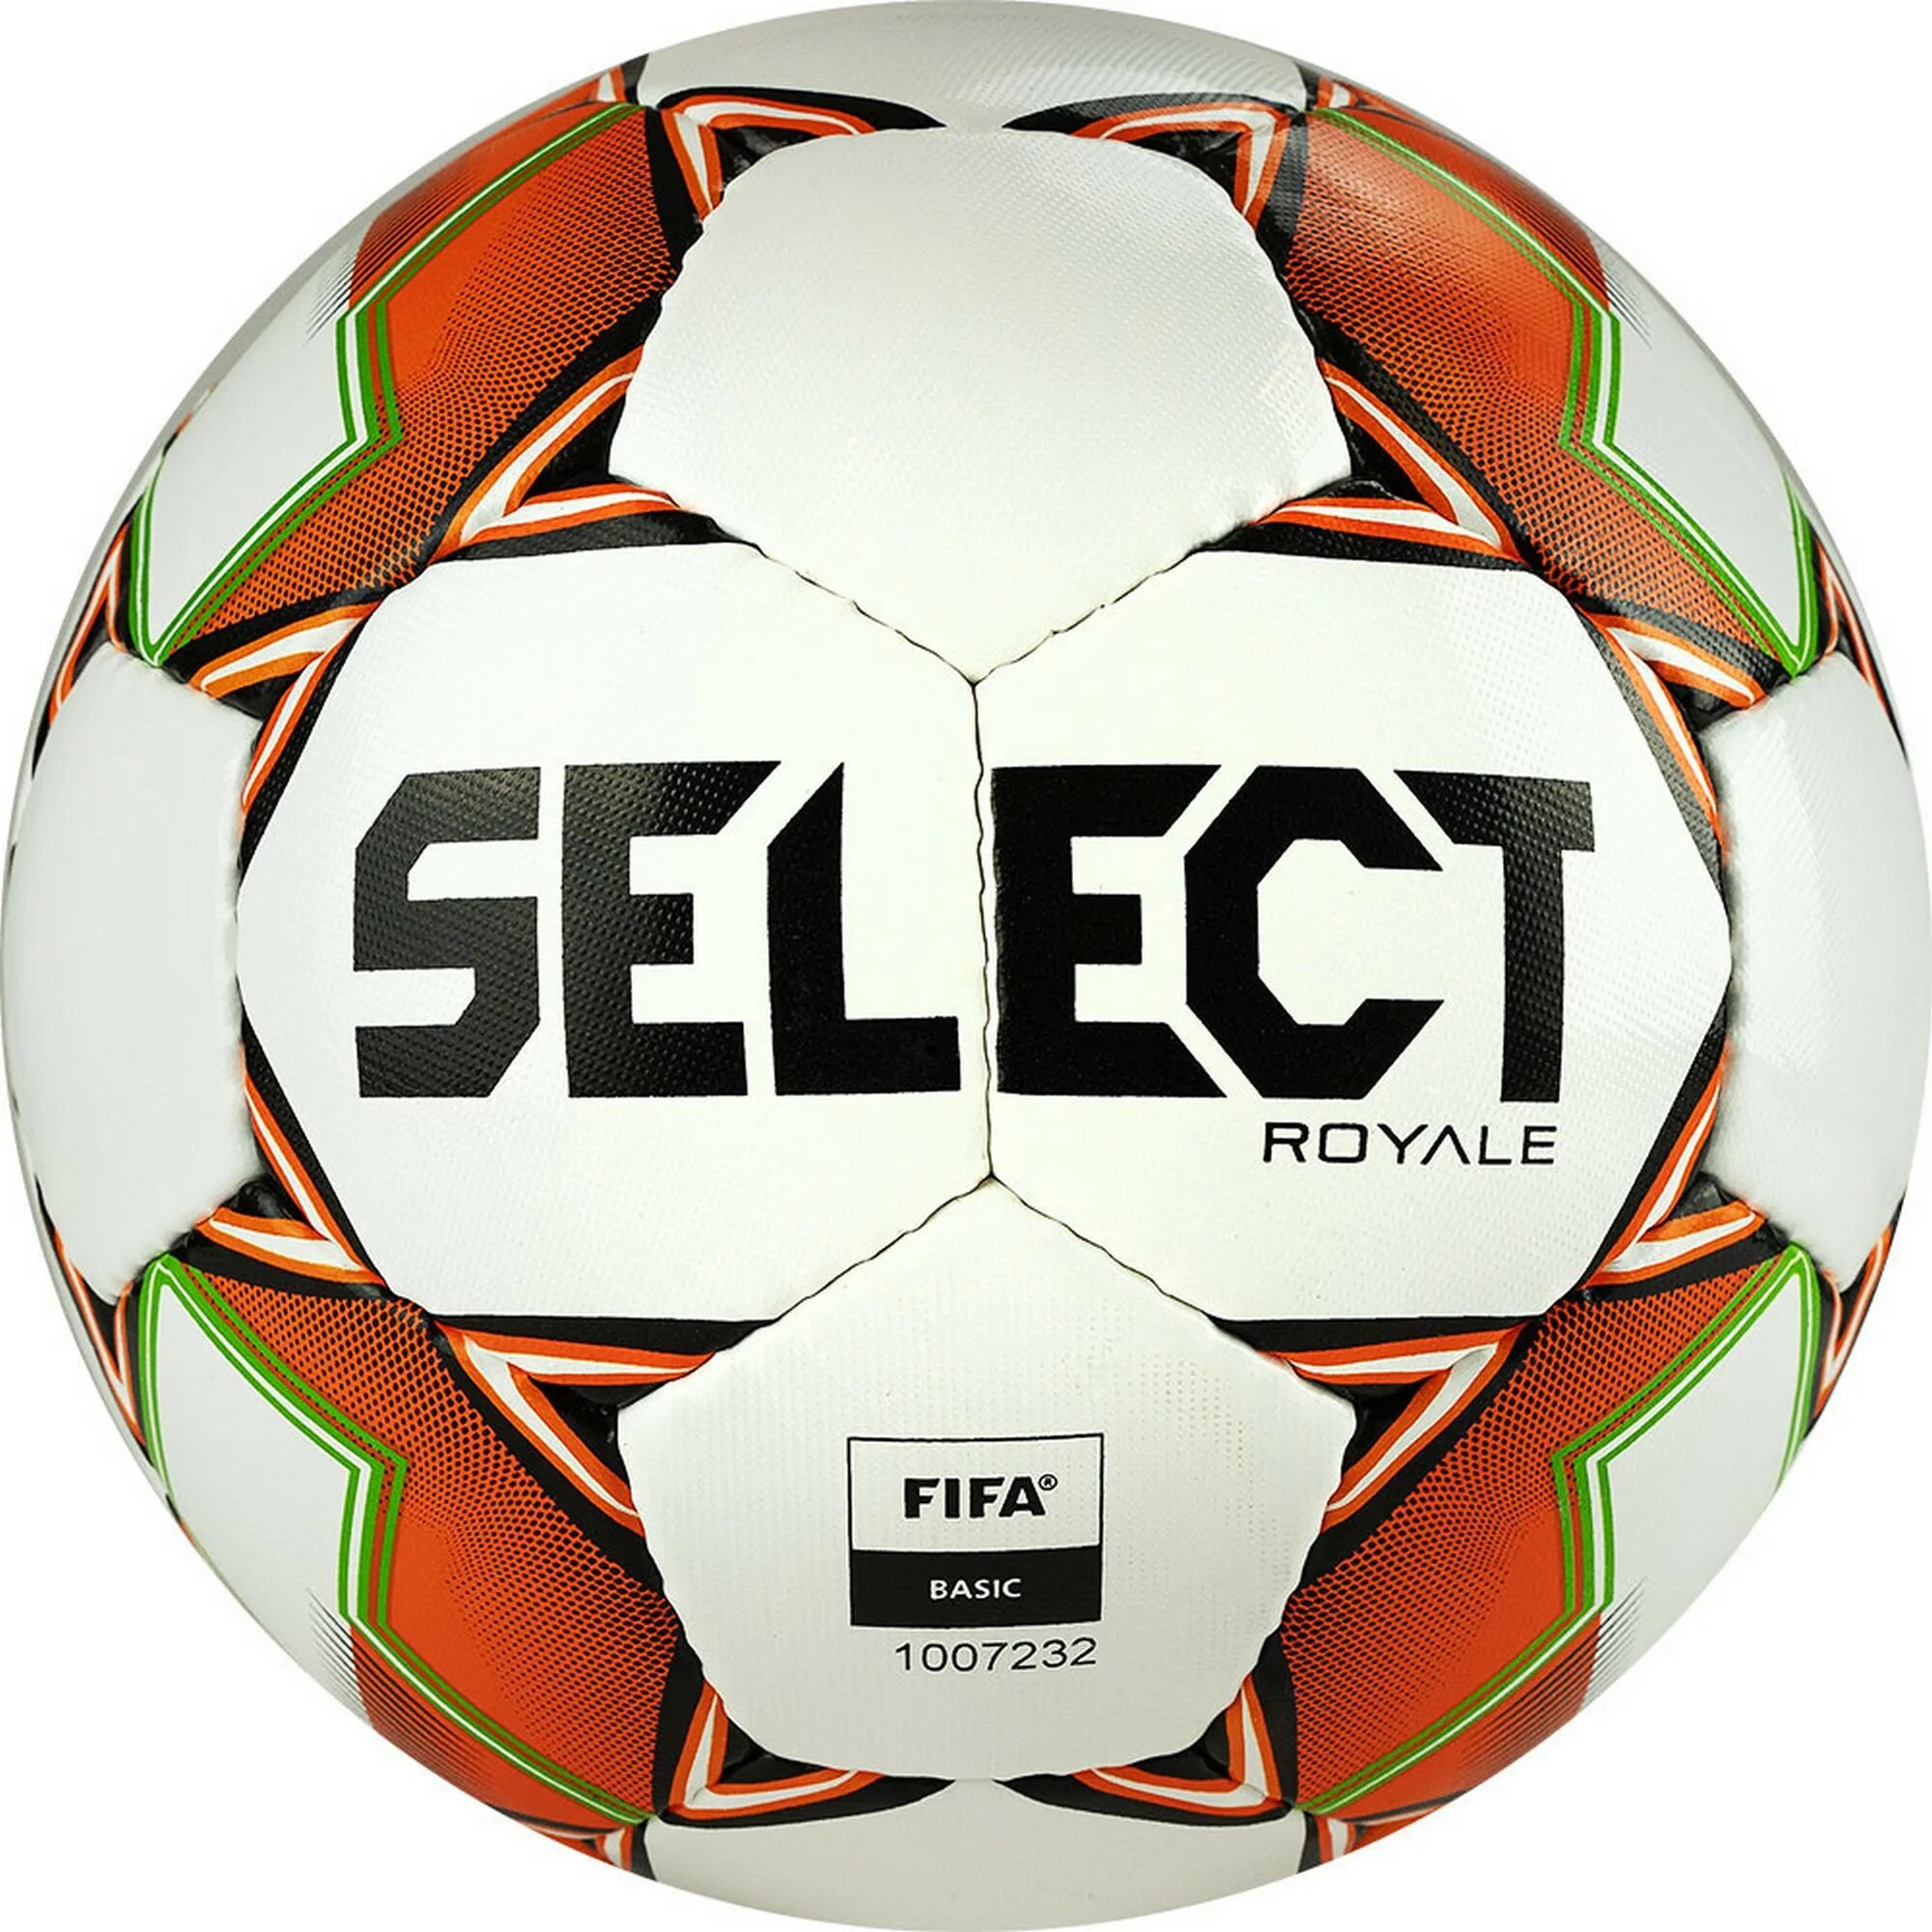 Футбольный мяч select Royale IMS White. Select Street Soccer 813120-555. Мяч футбольный select Team FIFA Basic. Футбол мяч ФИФА УЕФА.